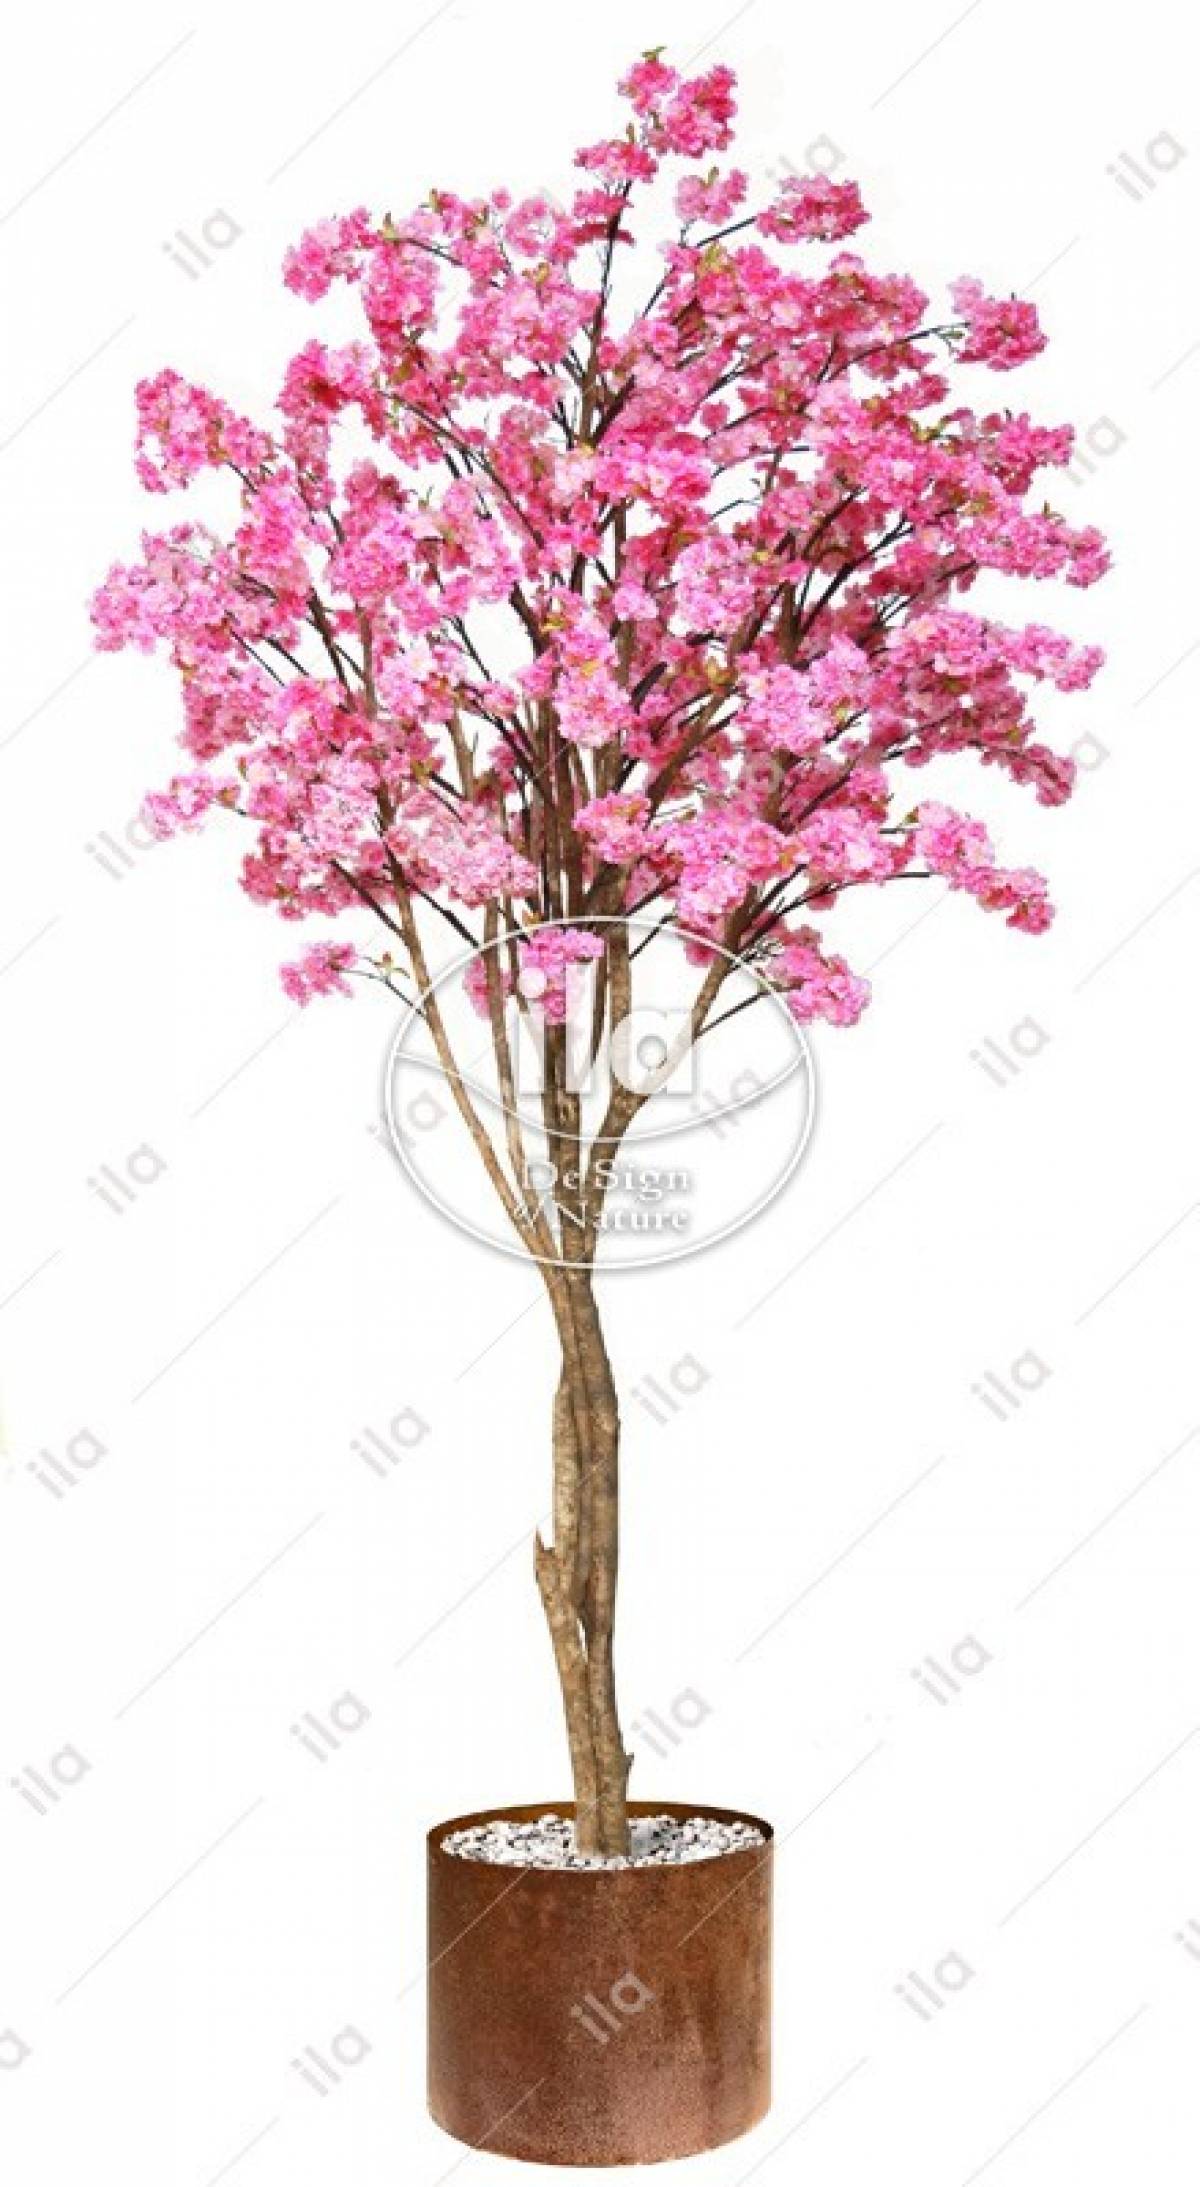 70523-cherry-blossom-gigantea-320-cm-d-140-pink.jpg